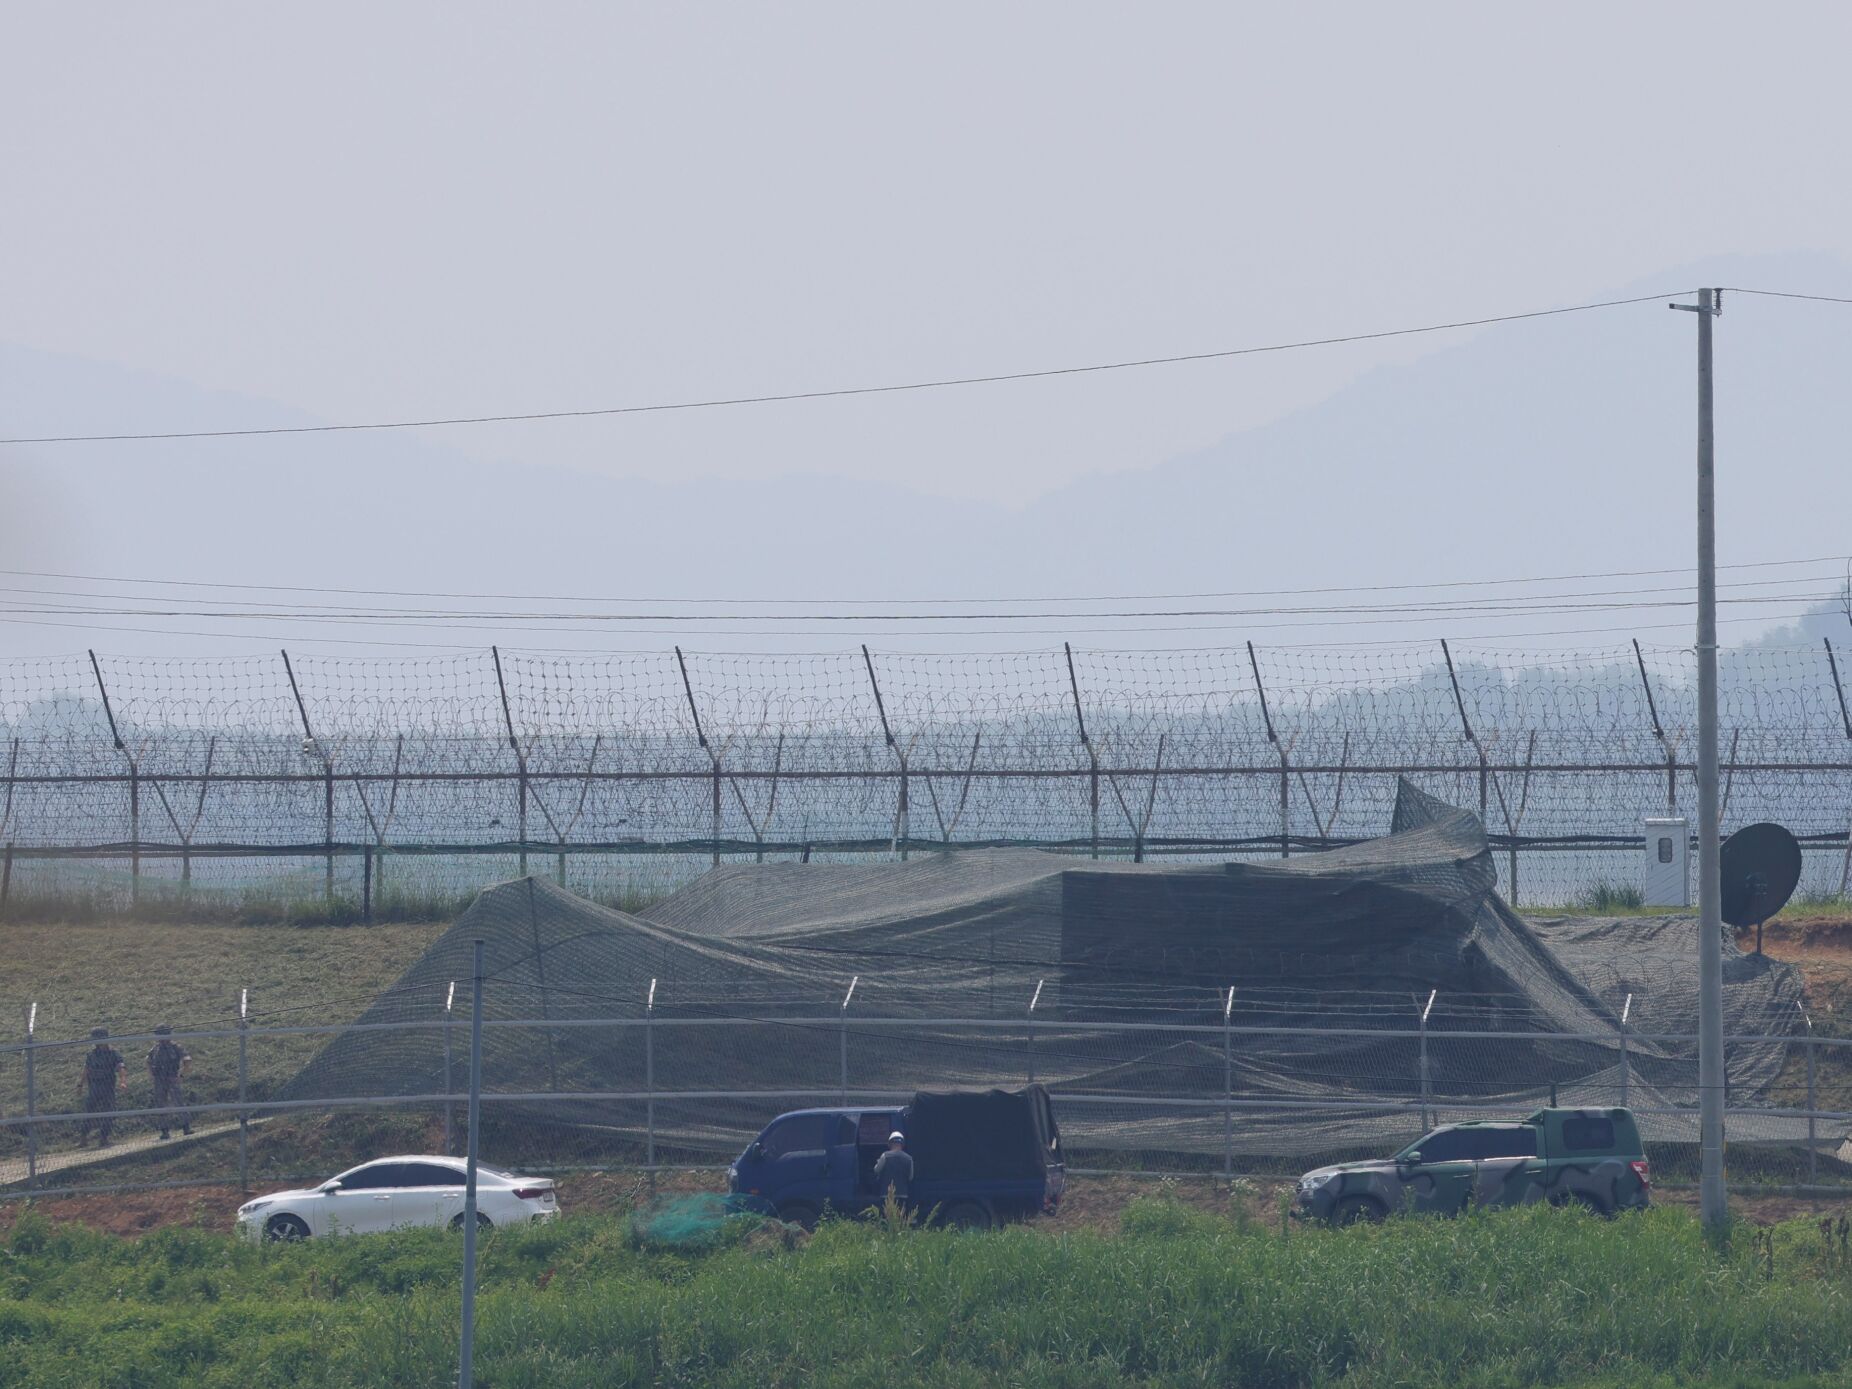 Seul dispara tiros de aviso após violação da fronteira pela Coreia do Norte